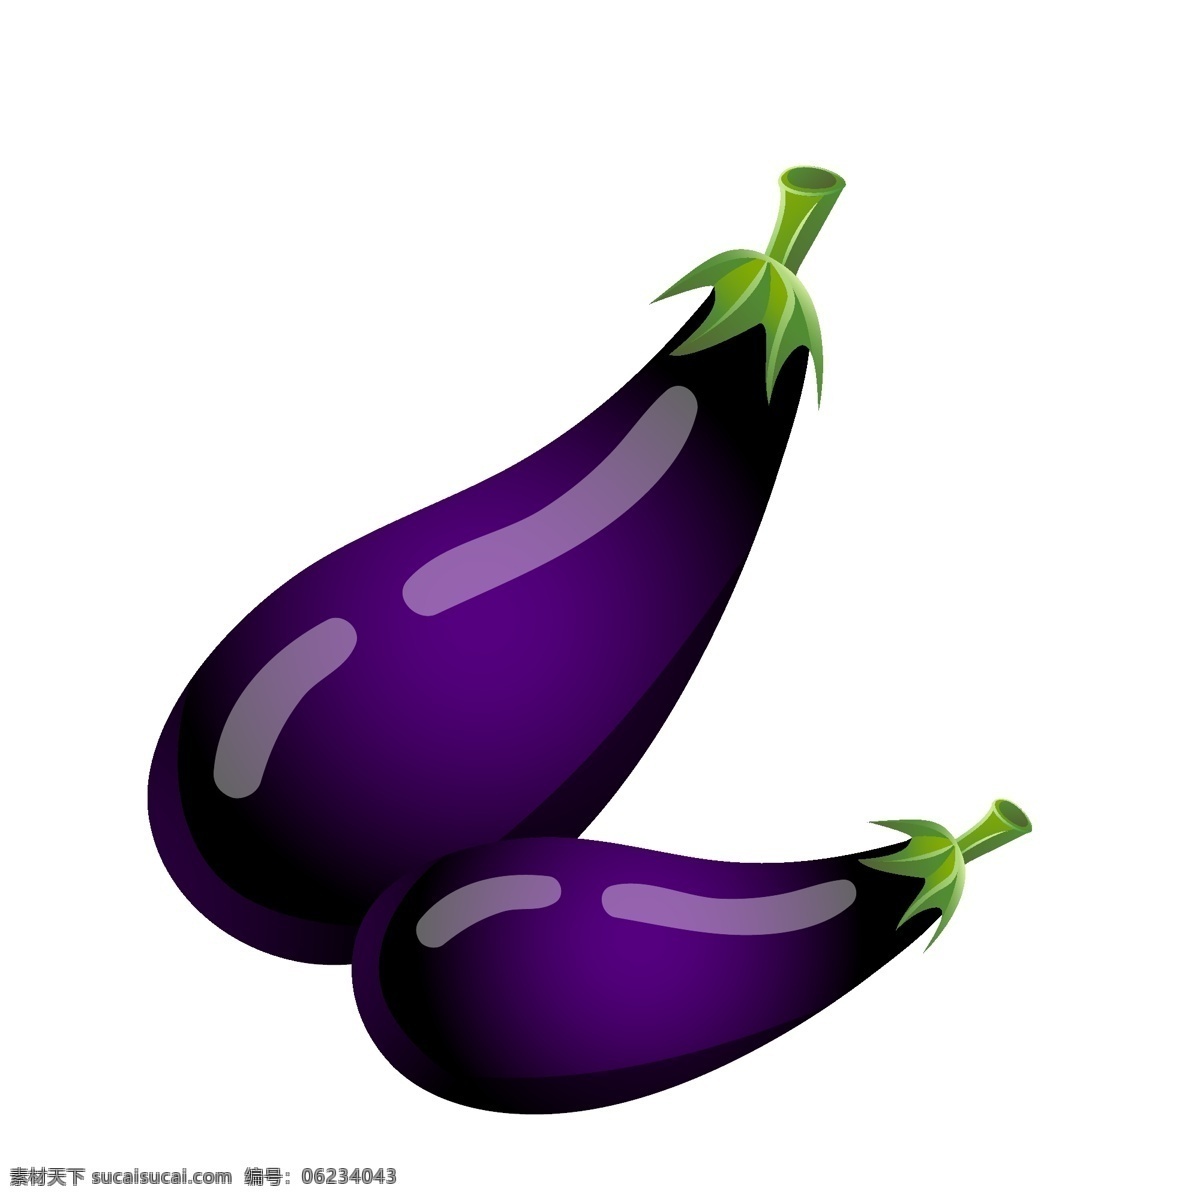 有机 蔬菜 茄子 插画 手绘 餐饮蔬菜茄子 手绘插画 紫色 两个茄子插画 有机蔬菜